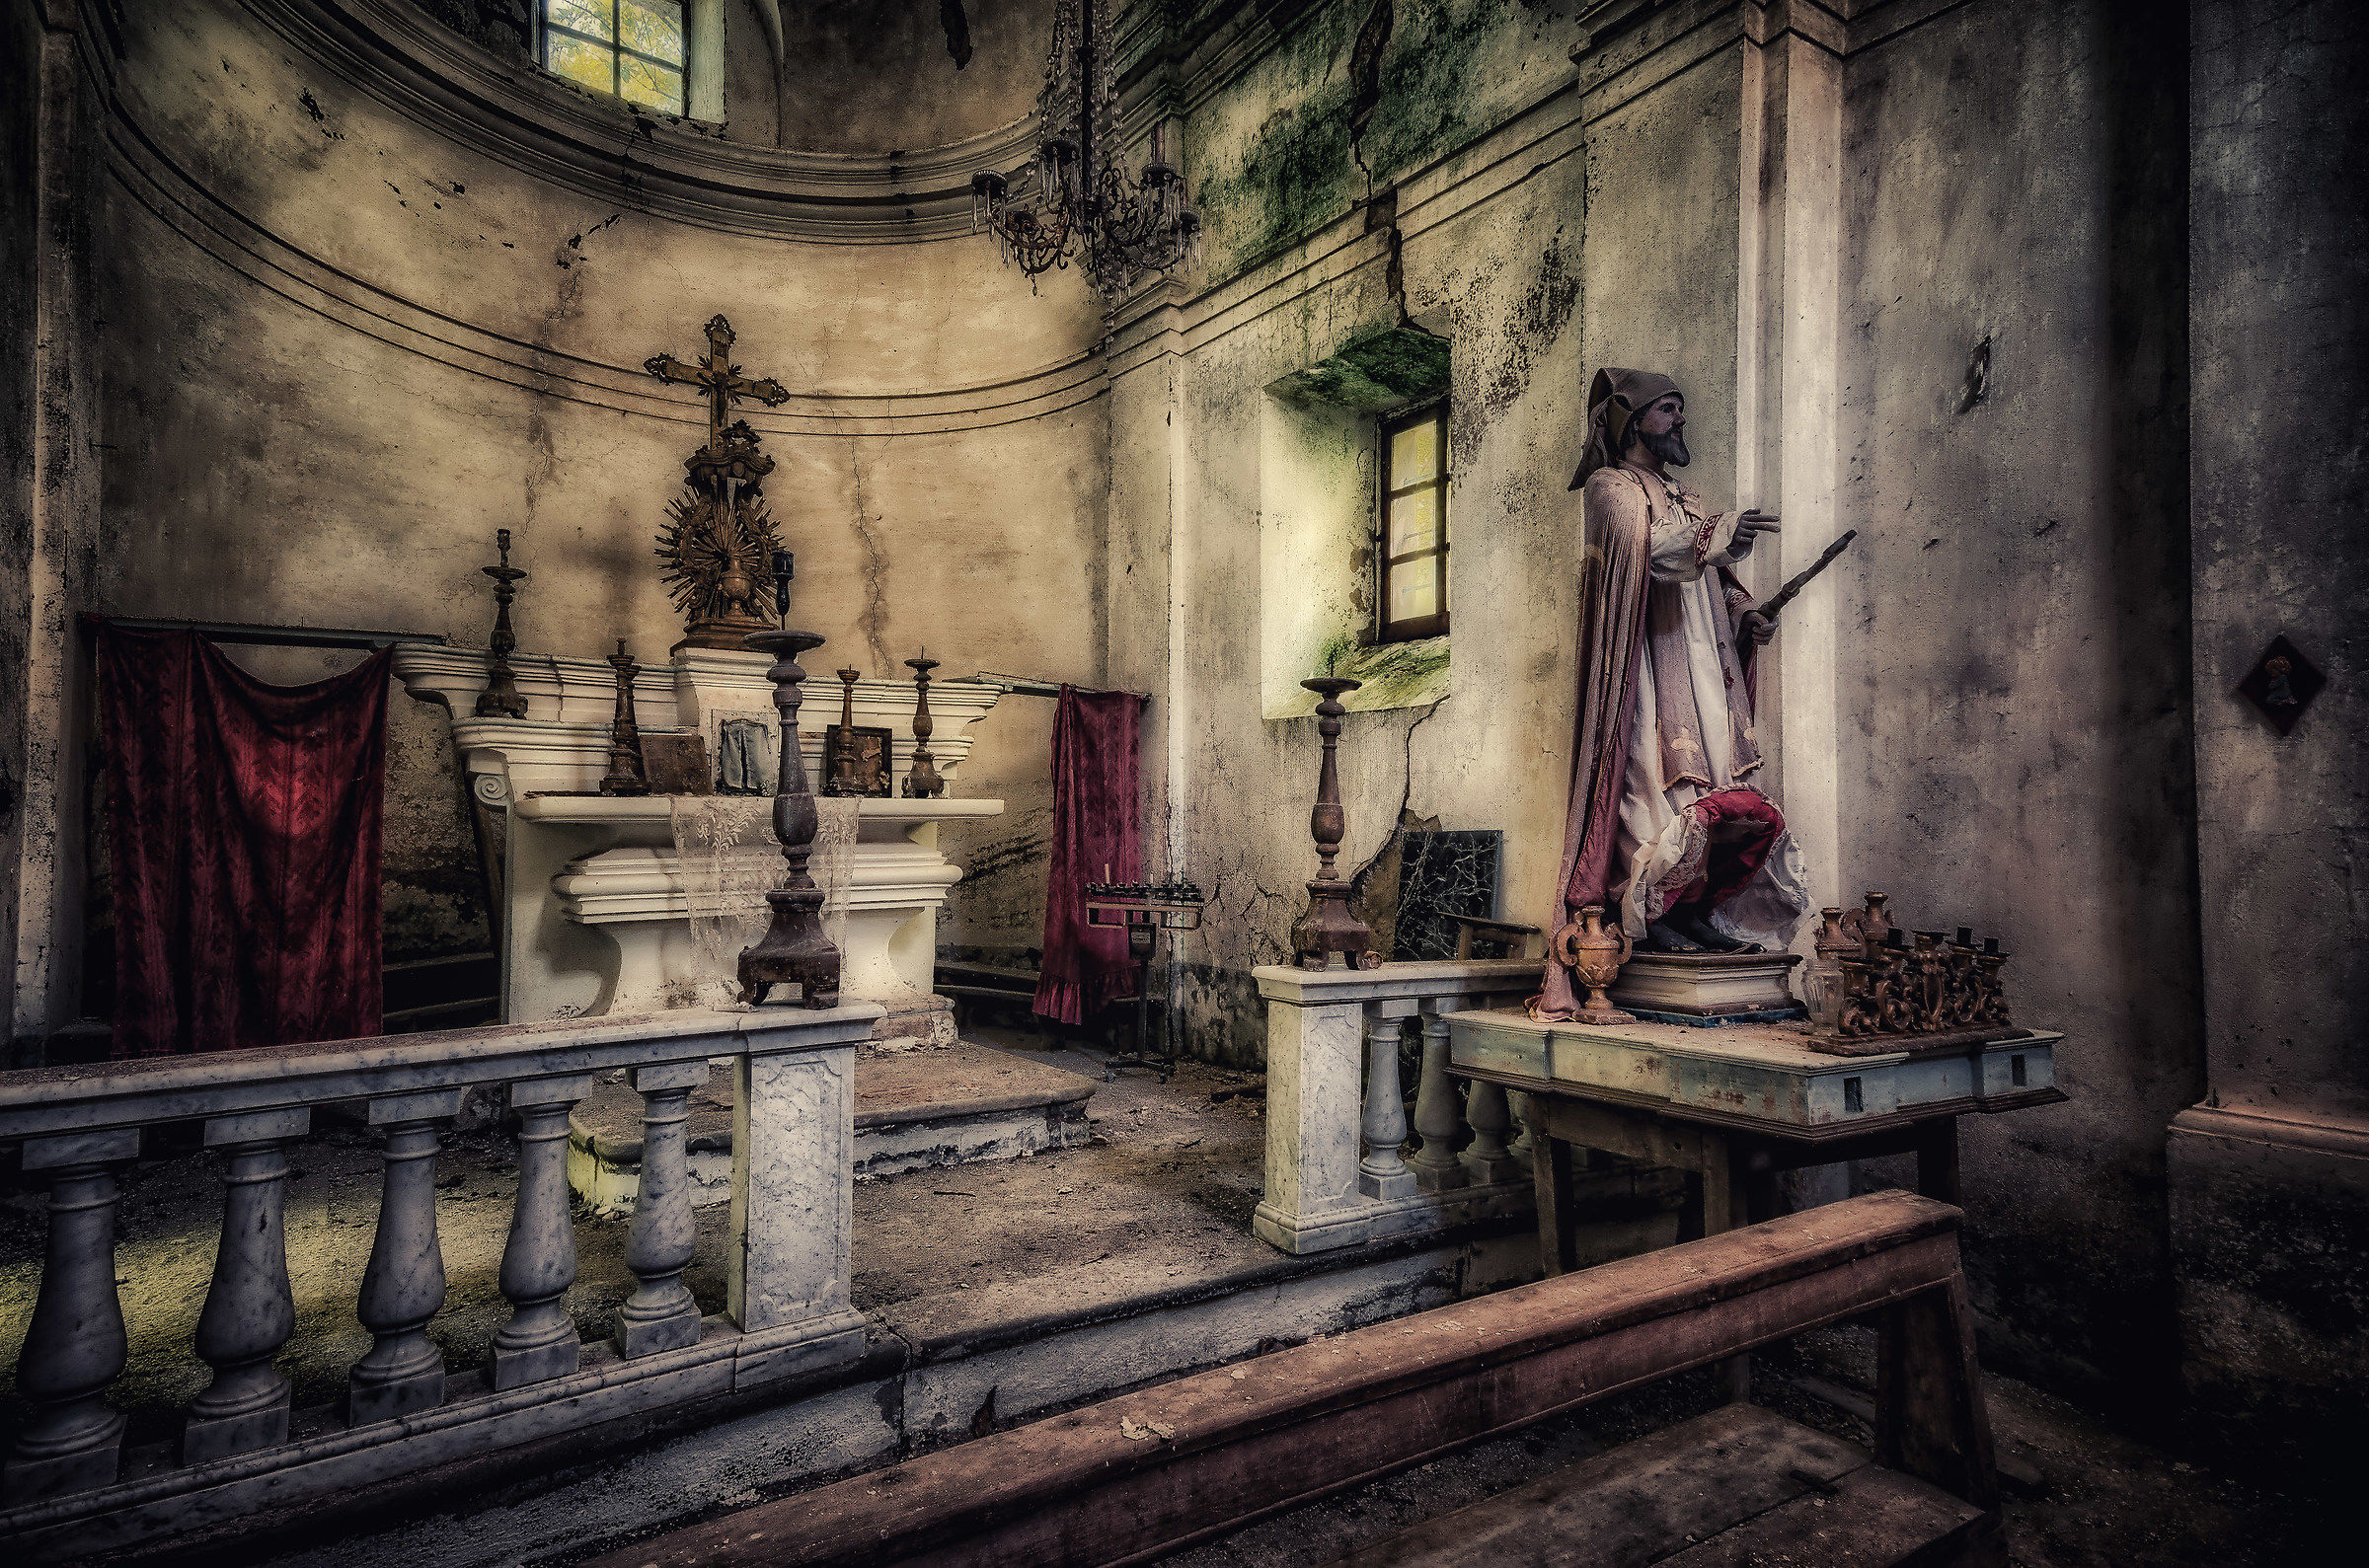 La chiesa abbandonata del santo con gli stivaletti...